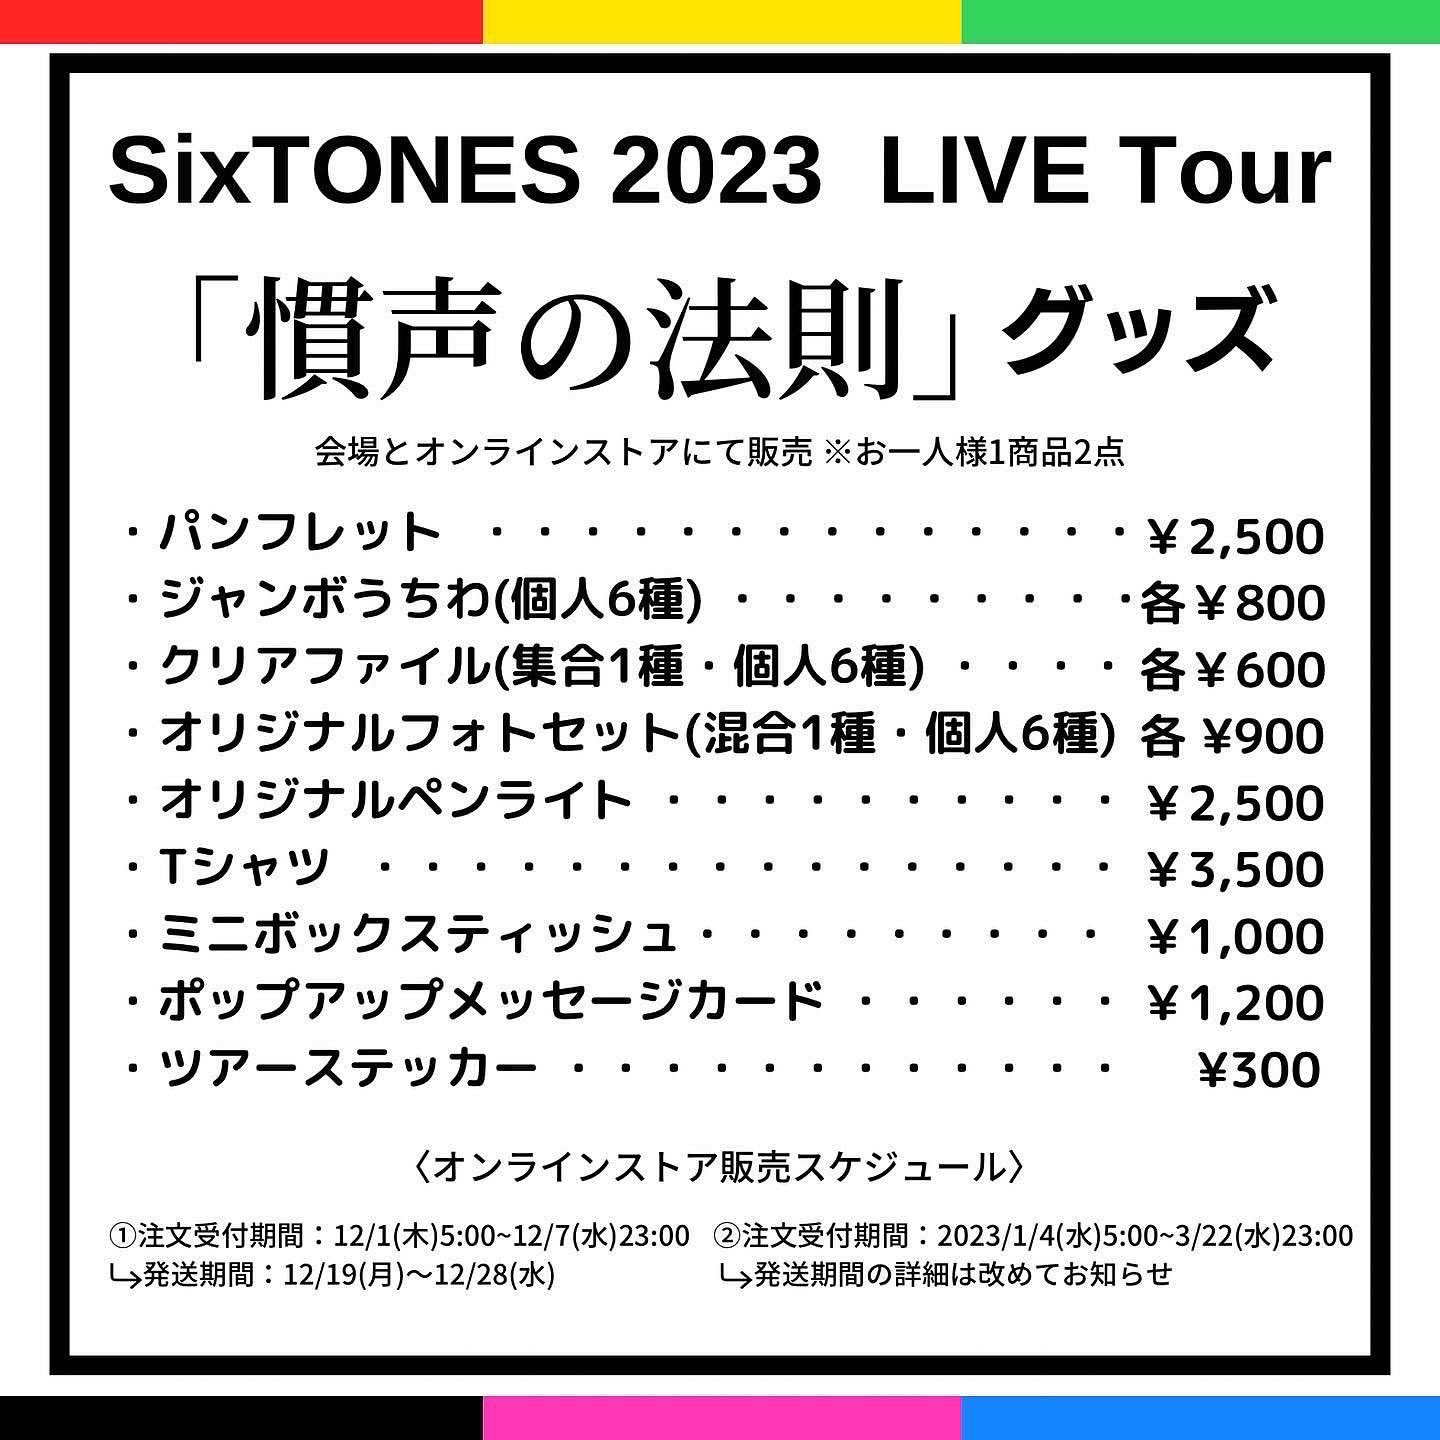 SixTONES info on X: 